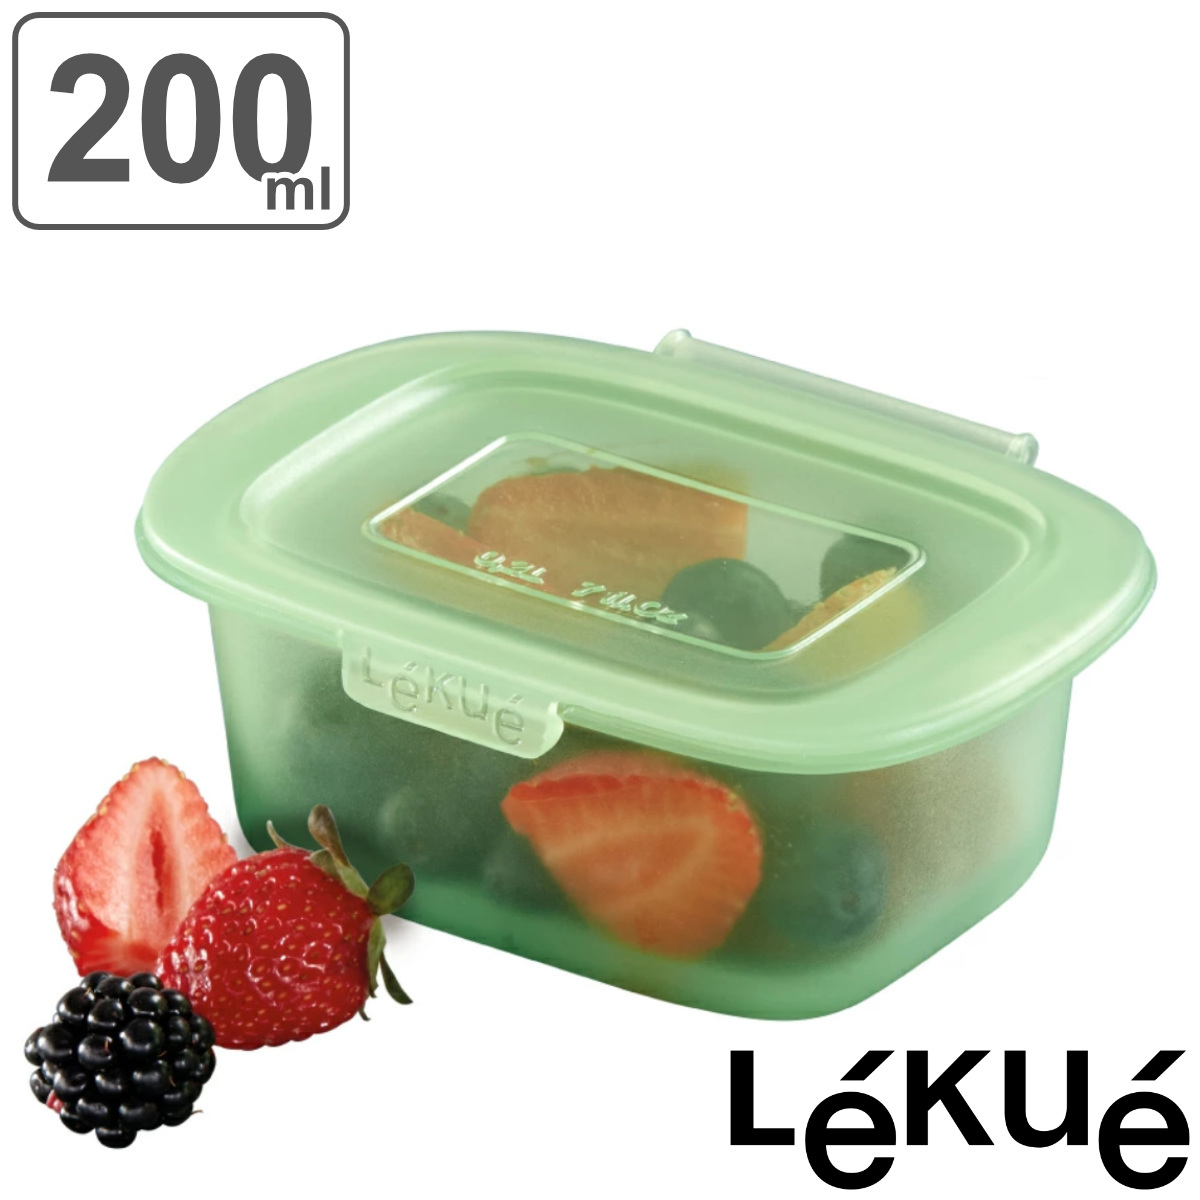 保存容器 200ml Lekue リユーサブルシリコンボックス